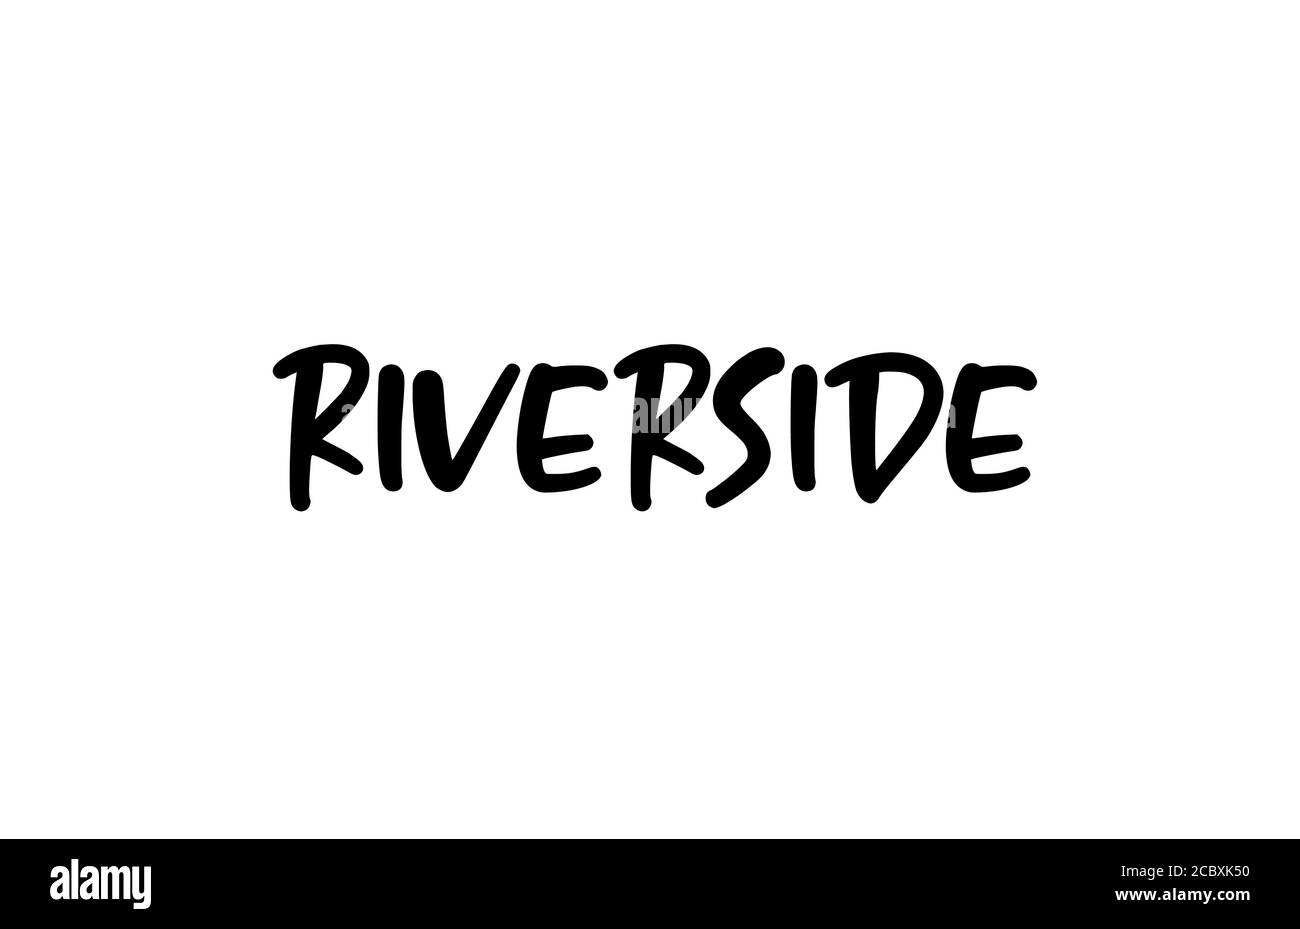 Riverside City typographie manuscrite texte mot lettrage à la main. Texte calligraphique moderne. Couleur noire Illustration de Vecteur